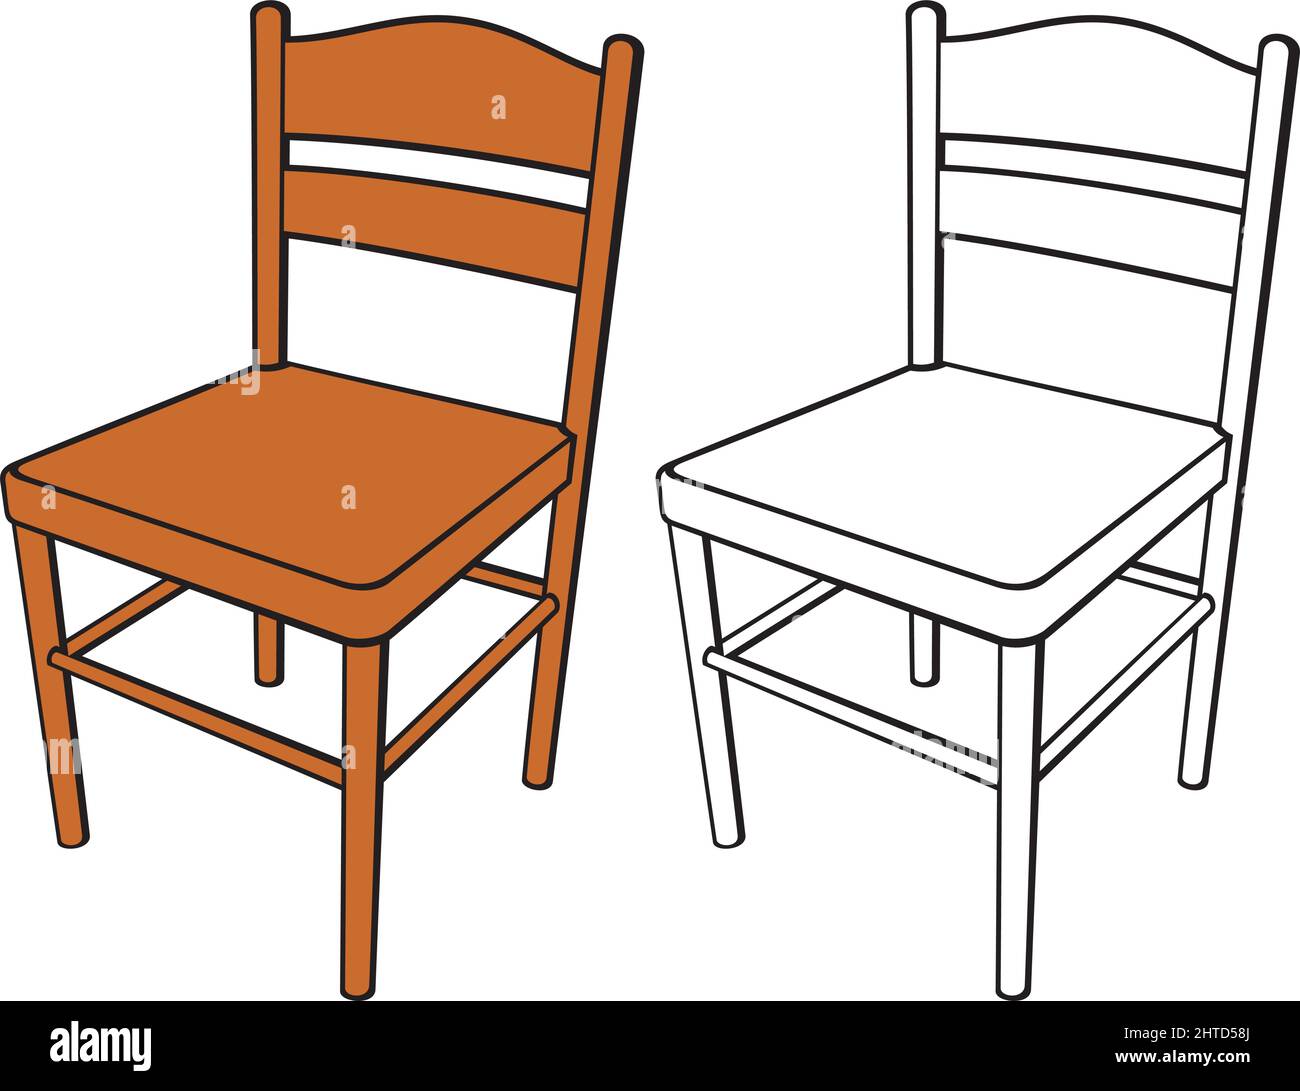 Klassische Stuhl Vektor-Illustration Stock Vektor